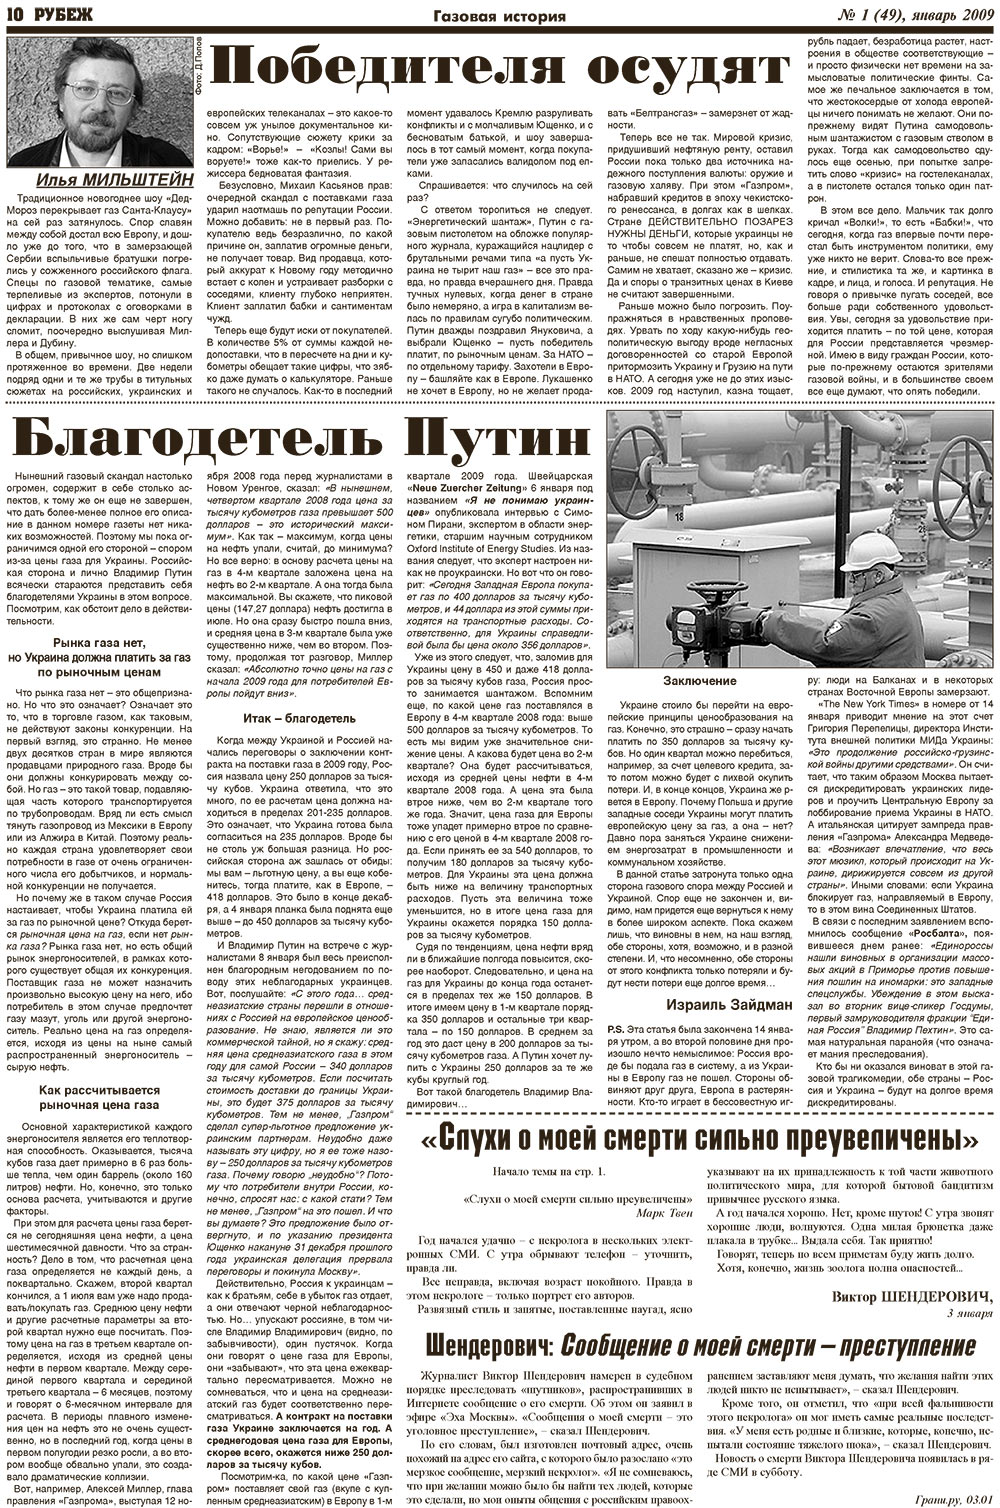 Рубеж (газета). 2009 год, номер 1, стр. 10